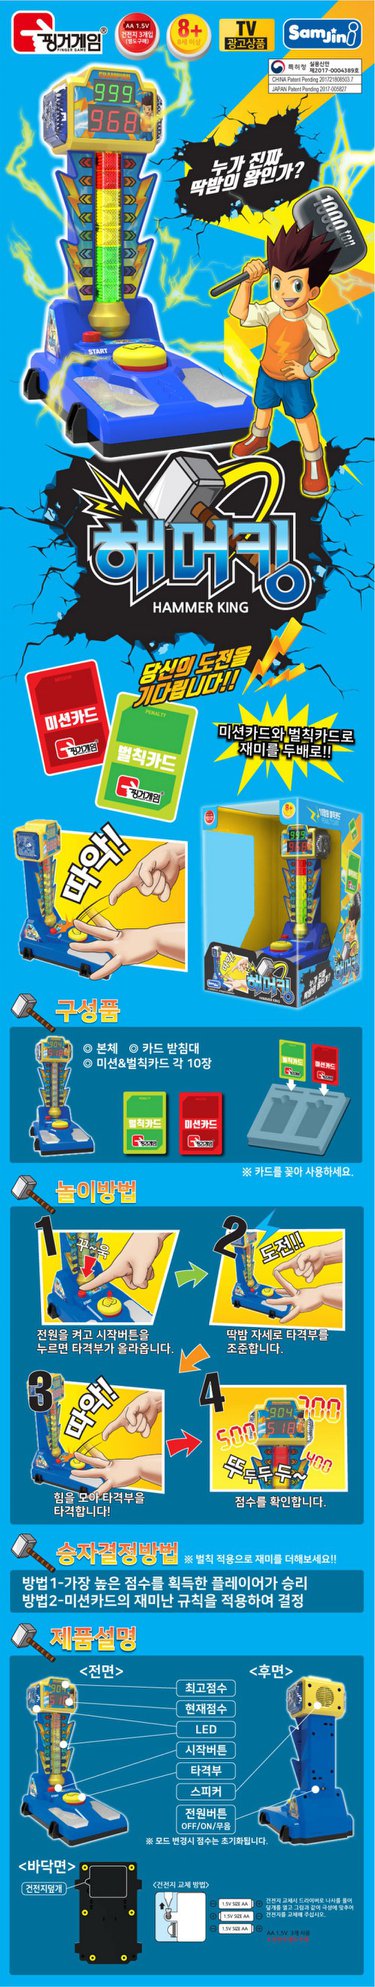 Samjini - 1/12 Scale Finger Game - Hammer King - Marvelous Toys